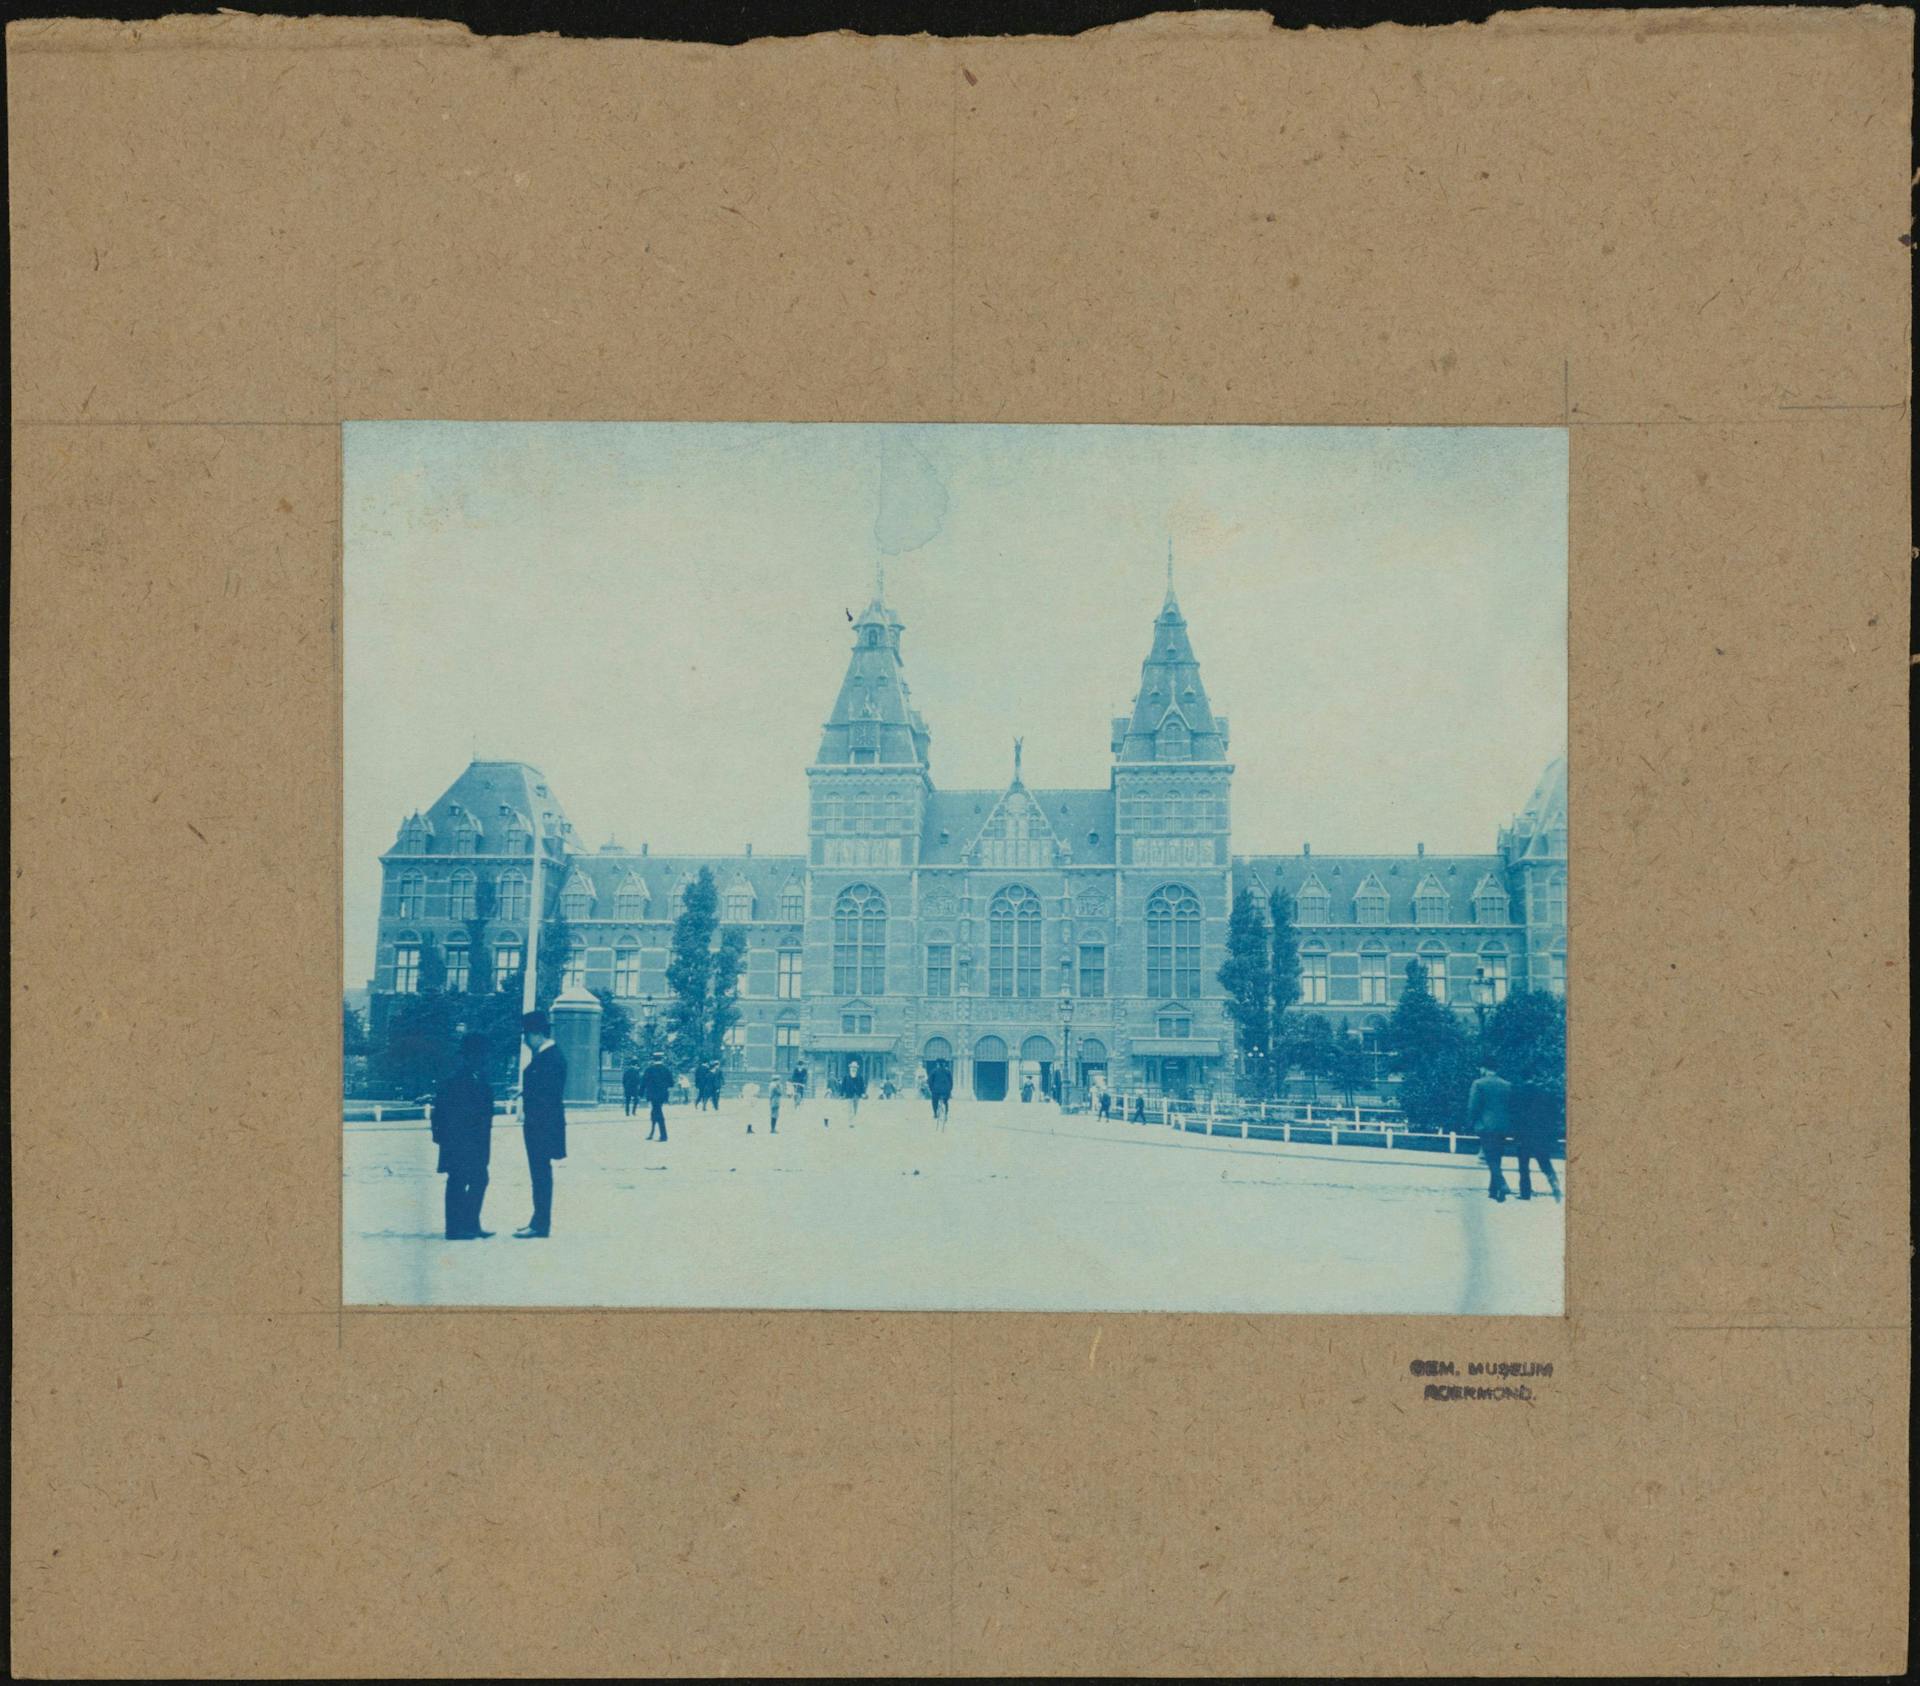 In de collectie van Het Nieuwe Instituut bevinden zich niet alleen blauwdrukken van architectuurtekeningen en bestekken, maar ook van architectuurfoto’s. Dit zijn twee negentiende- eeuwse voorbeelden van blauwdrukfoto’s van het Rijksmuseum. De… 